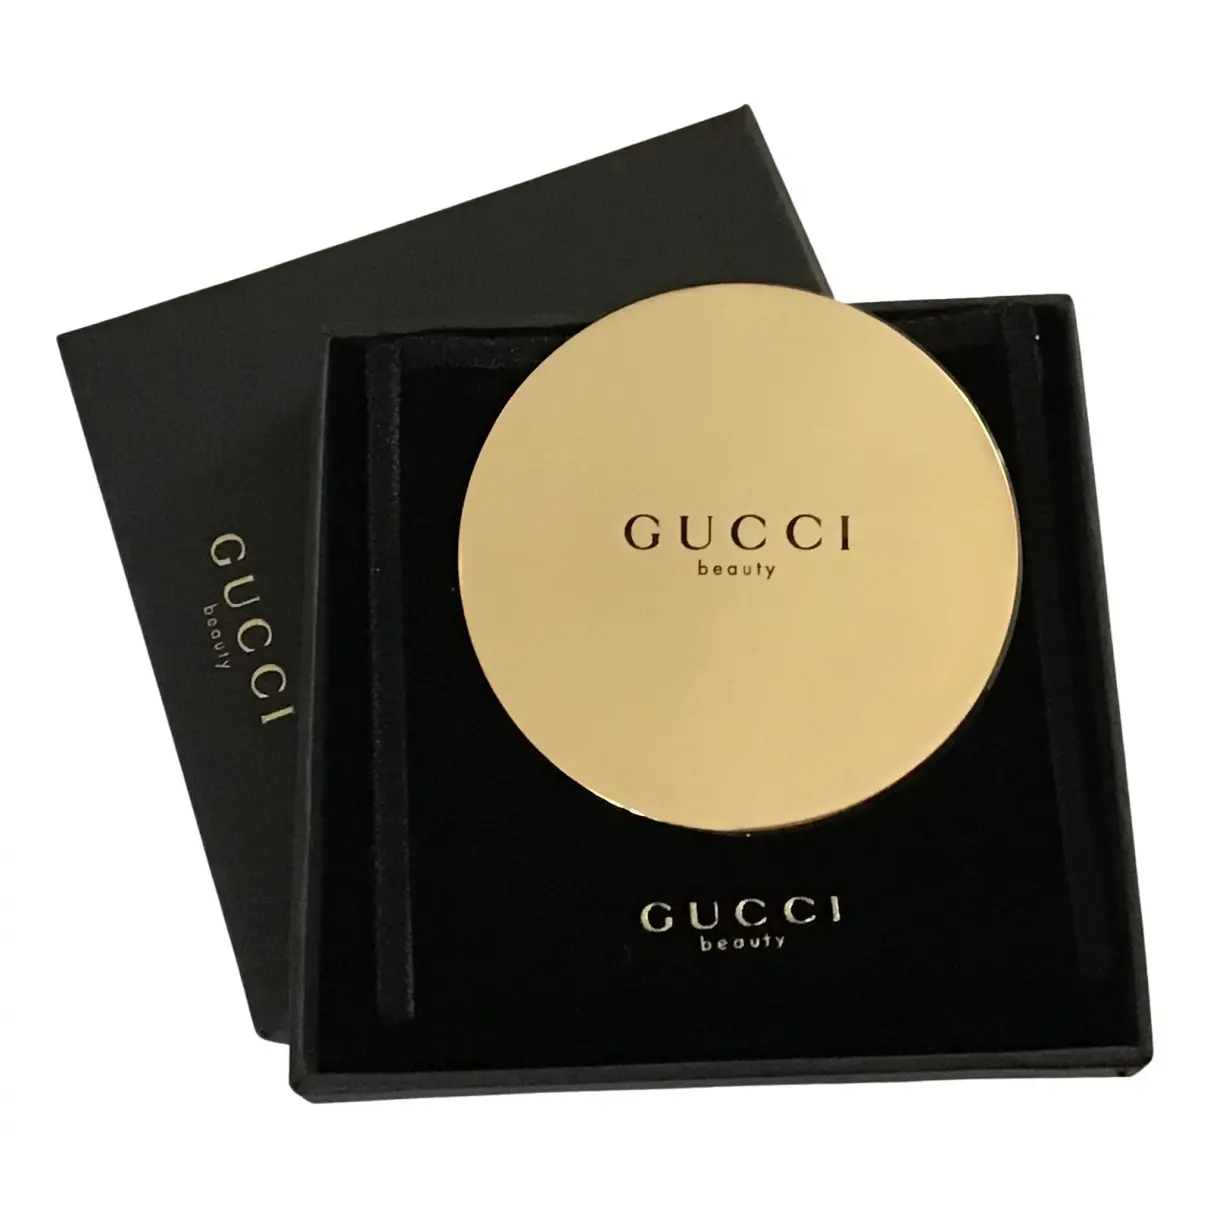 Buy Gucci Mirror online